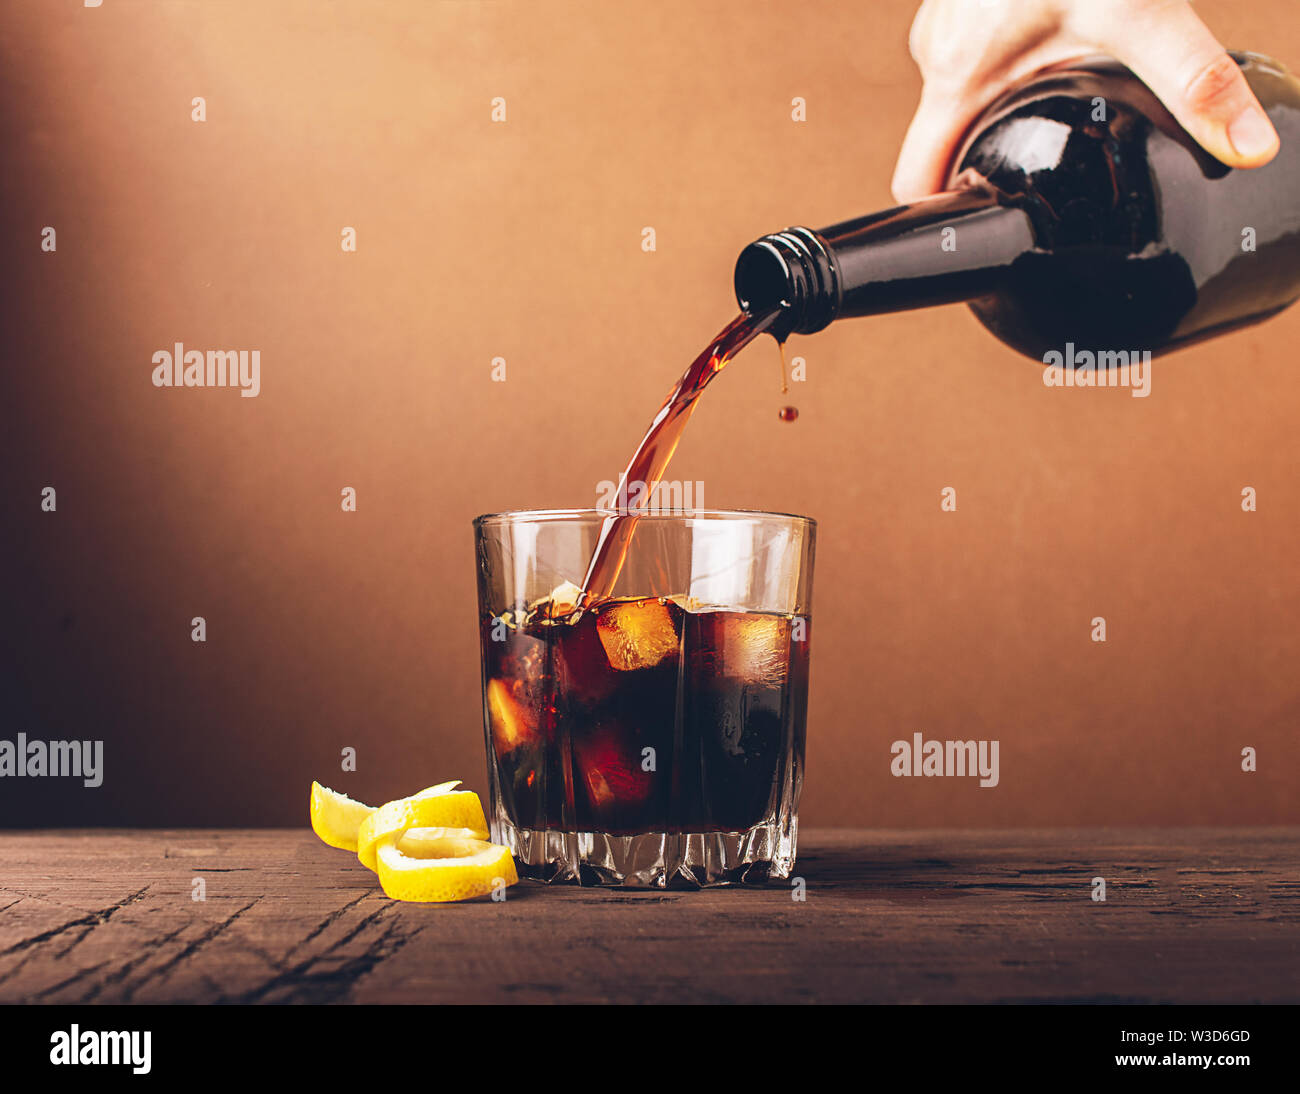 In ein Glas mit Eiswürfel gegossen Whiskey Brandy. Starke alkoholische Getränk auf einem dunklen Hintergrund. Selektive konzentrieren. Kopieren Sie Platz. Stockfoto